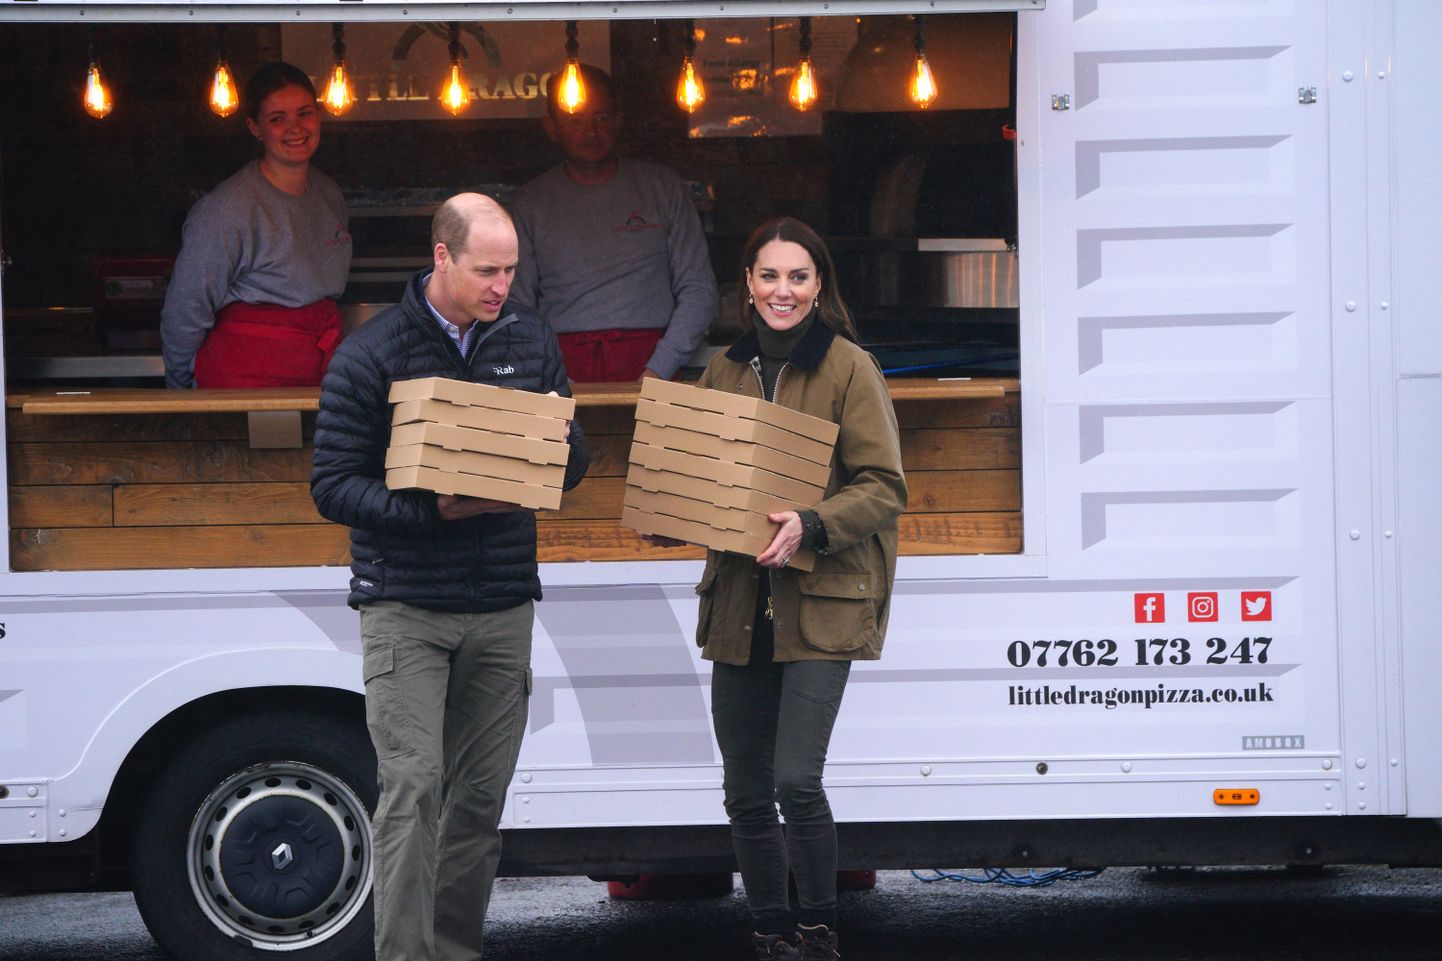 William ja Kate ostsid kõvasti pitsat.